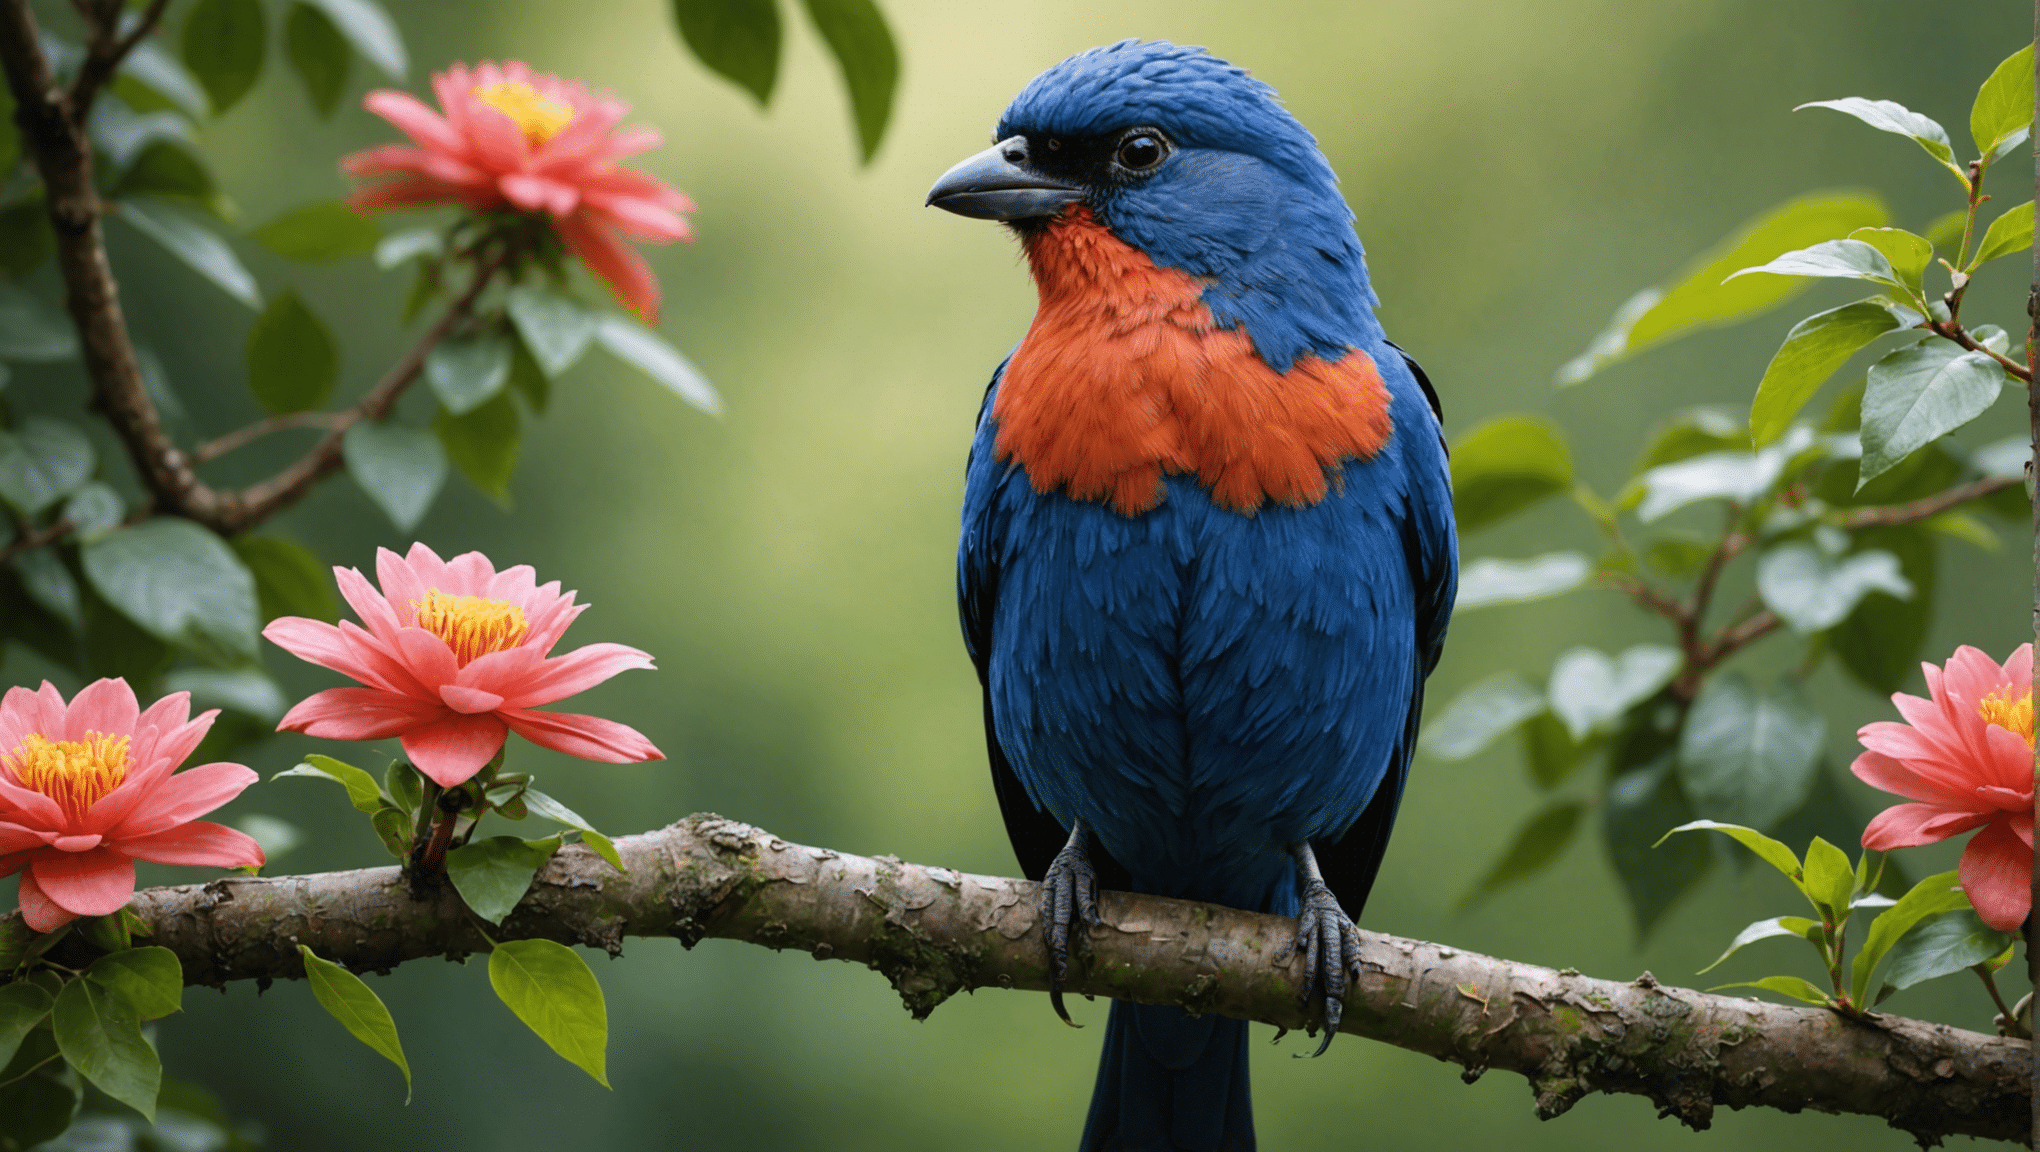 çirkin kuşlar gerçekten güzel mi? Doğanın gizli güzelliğinin bu büyüleyici keşfinde ve görünüşte çirkin kuşların güzelliğinin ardındaki şaşırtıcı gerçeği keşfedin.